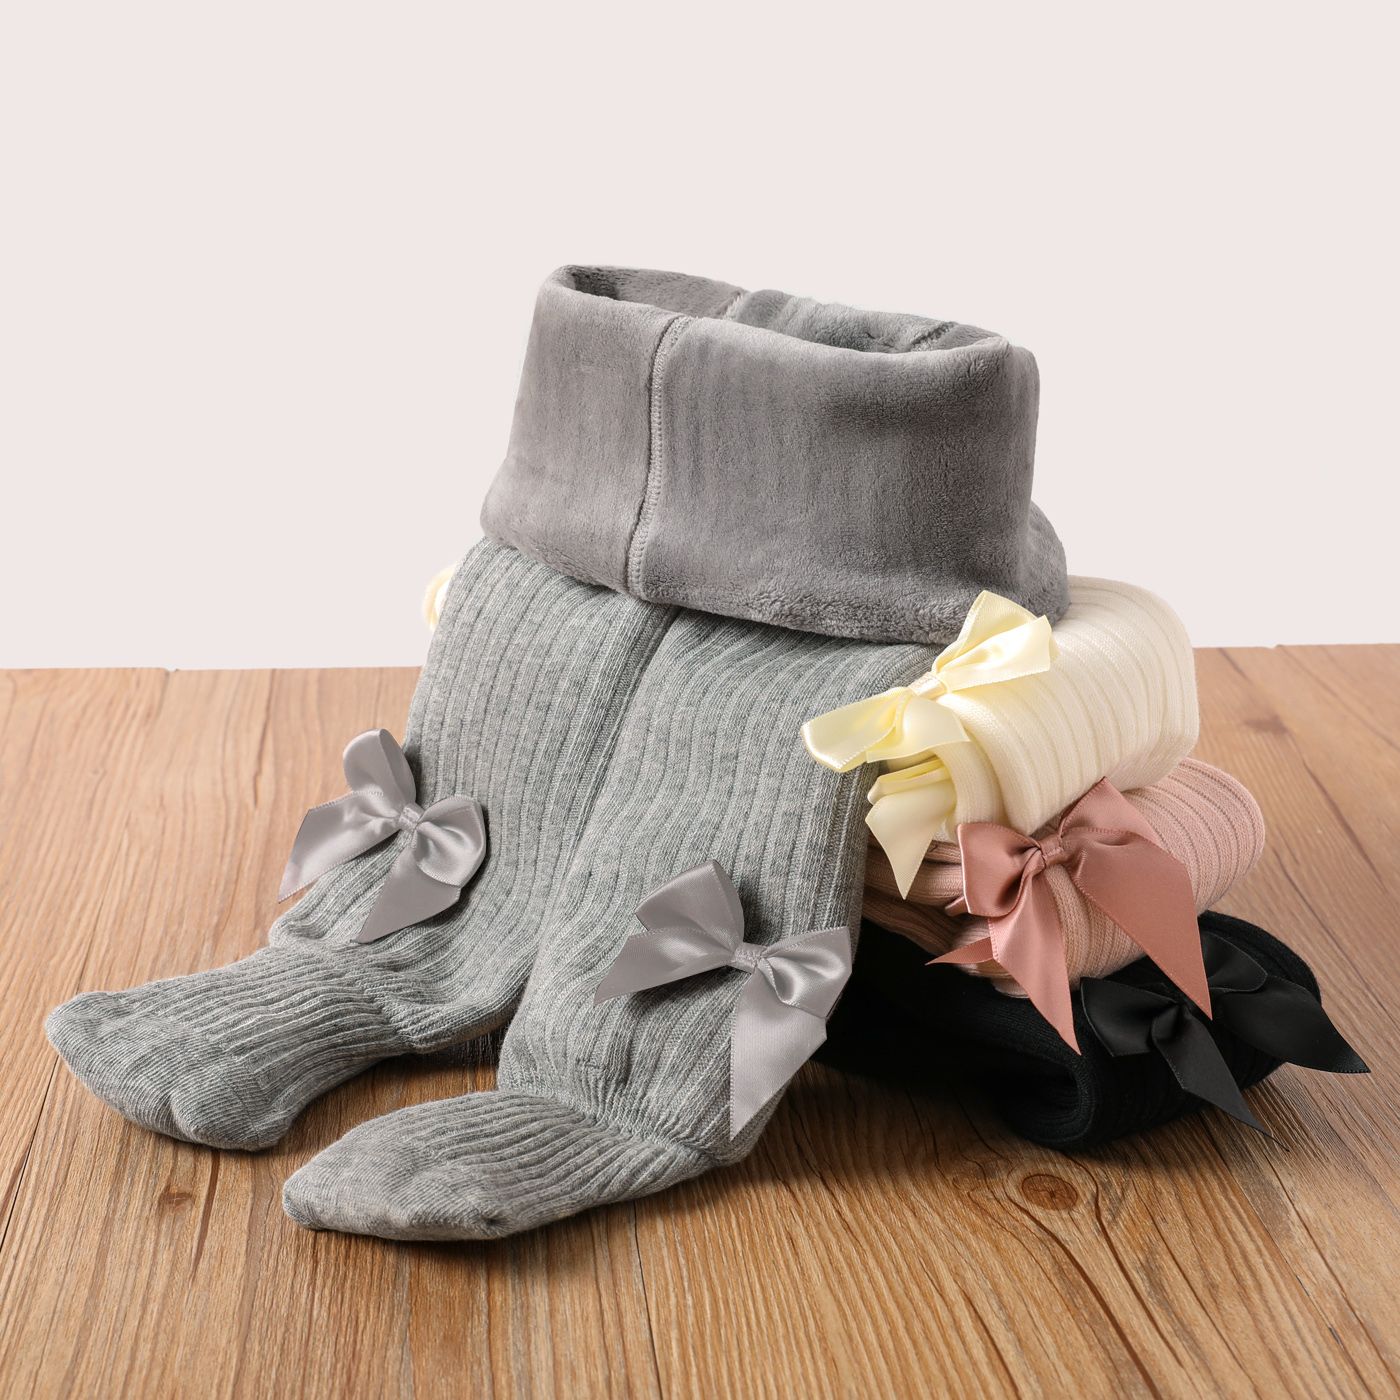 嬰兒/蹣跚學步的蝴蝶結裝飾保暖褲襪連褲襪